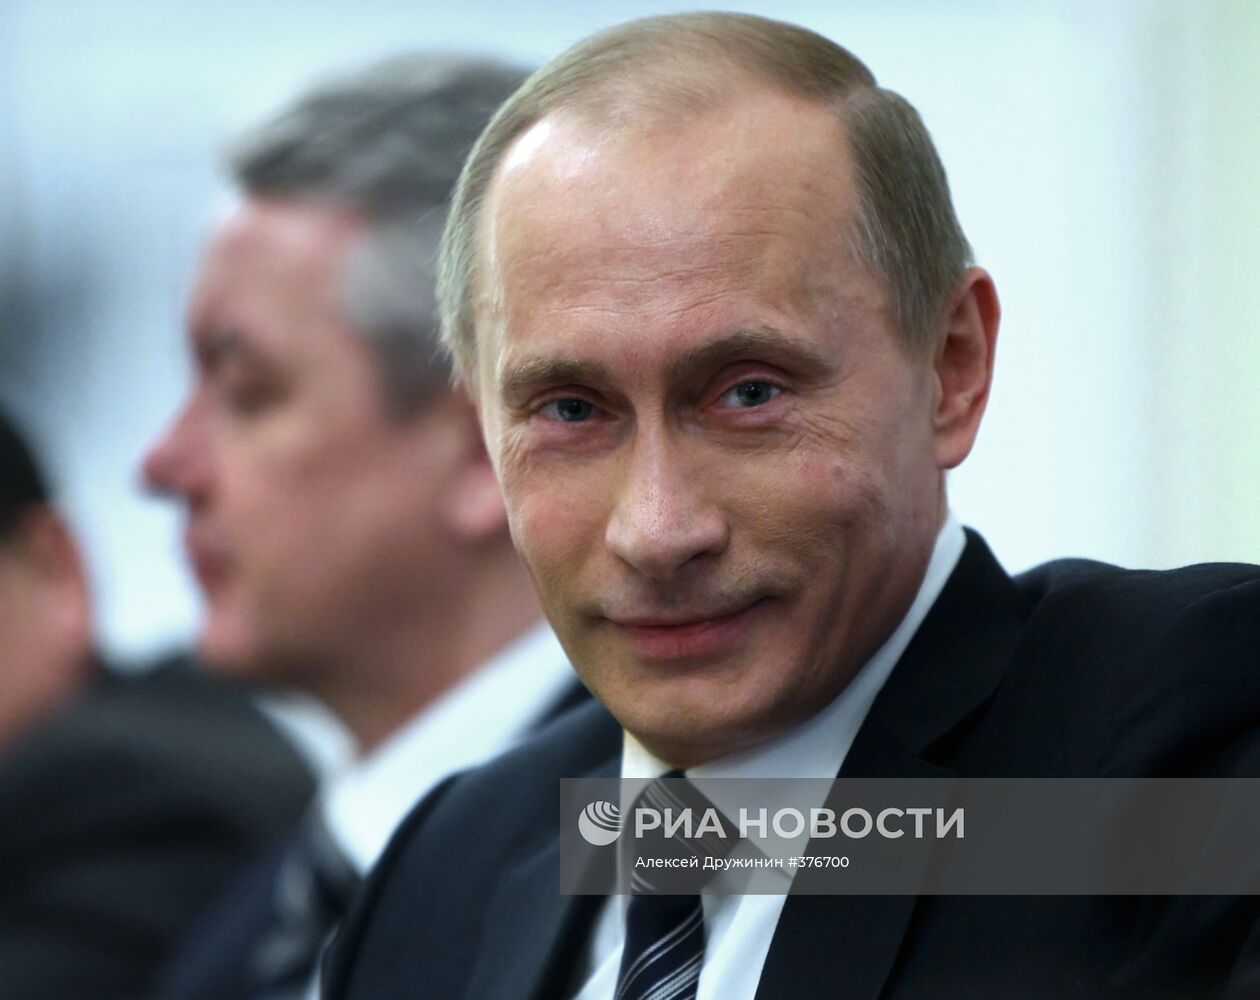 Встреча В. Путина с руководством партии "Единая Россия"